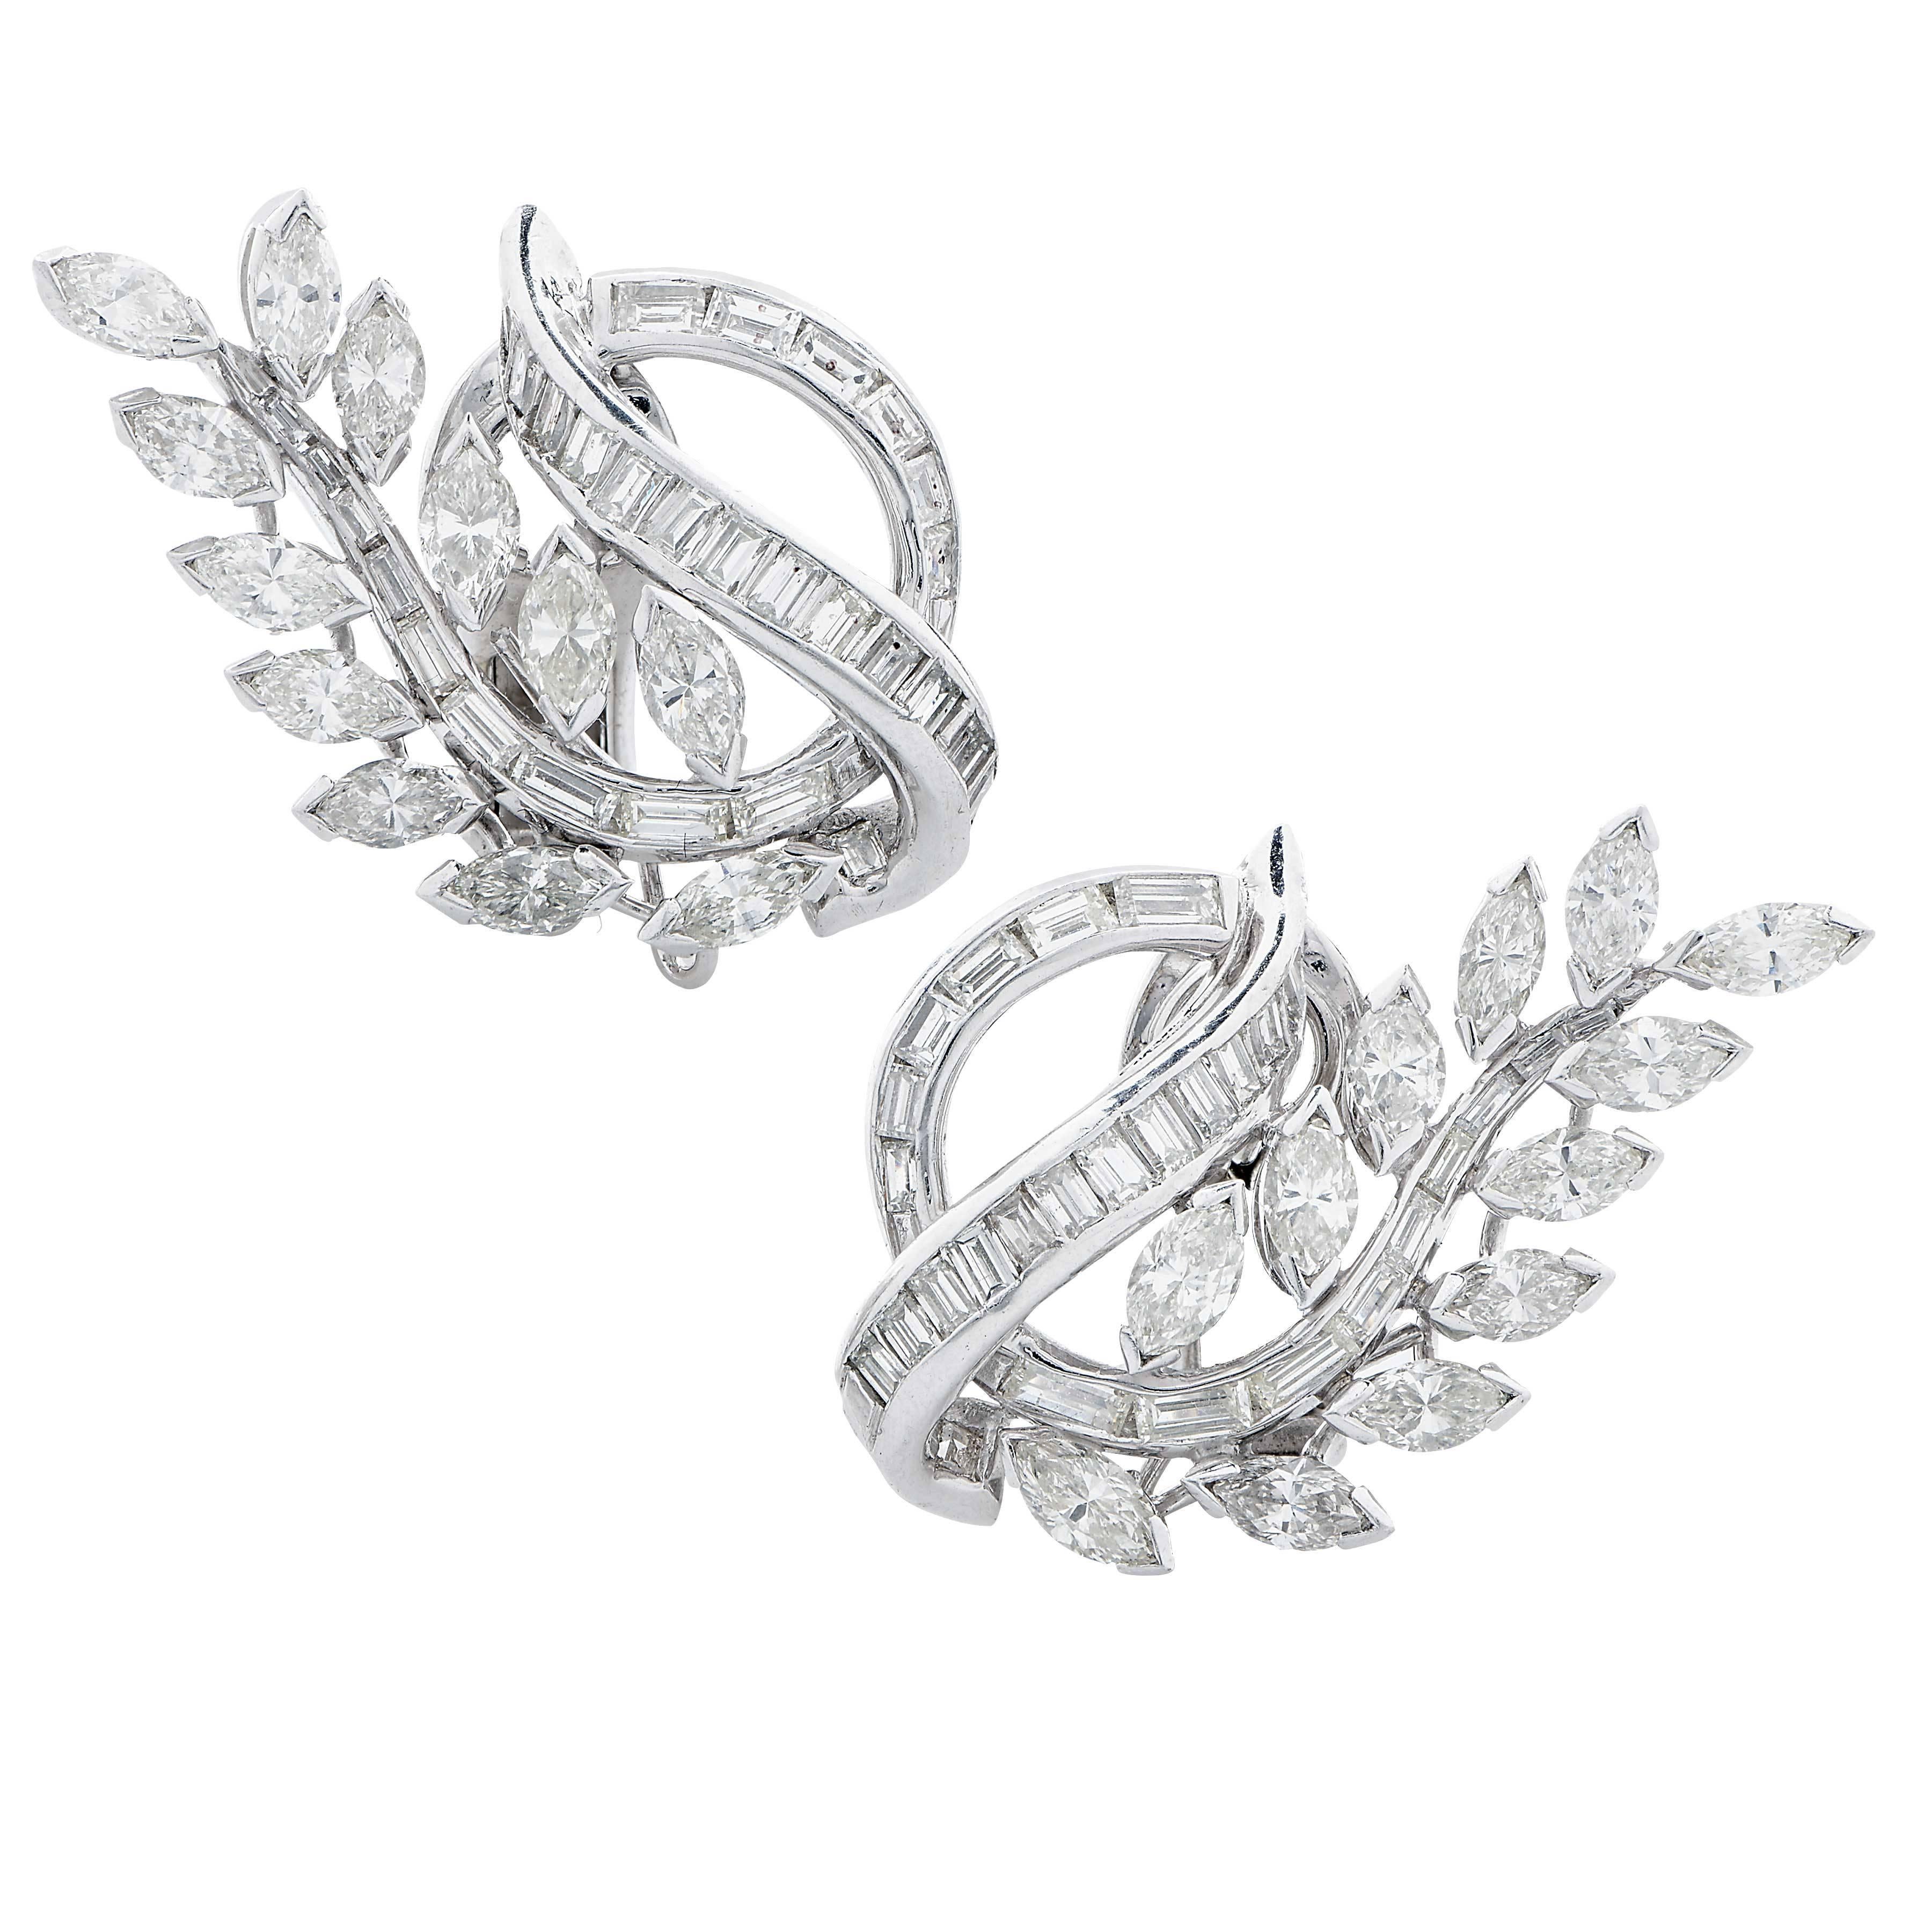 .5 carat diamond earrings on ear